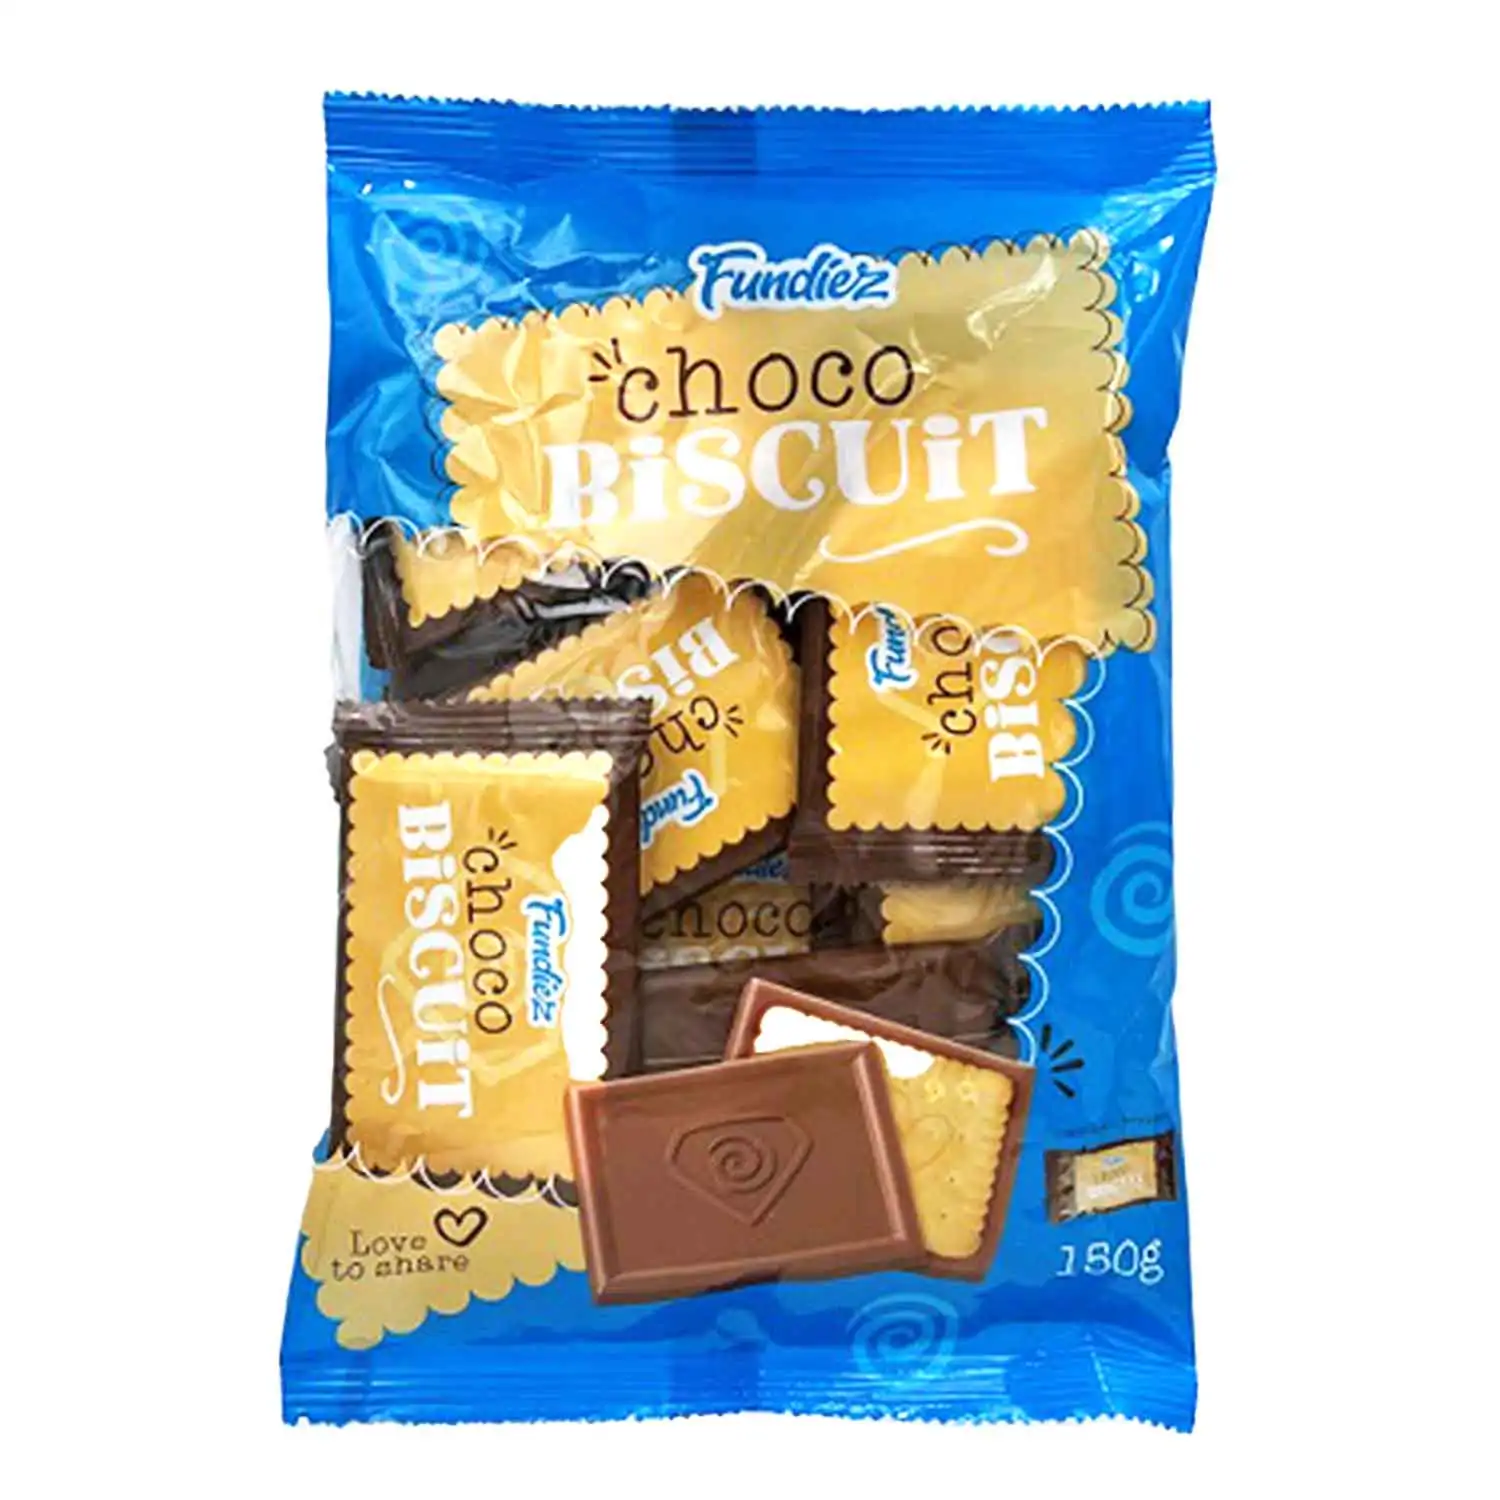 Fundiez choco biscuit 12x12,5g